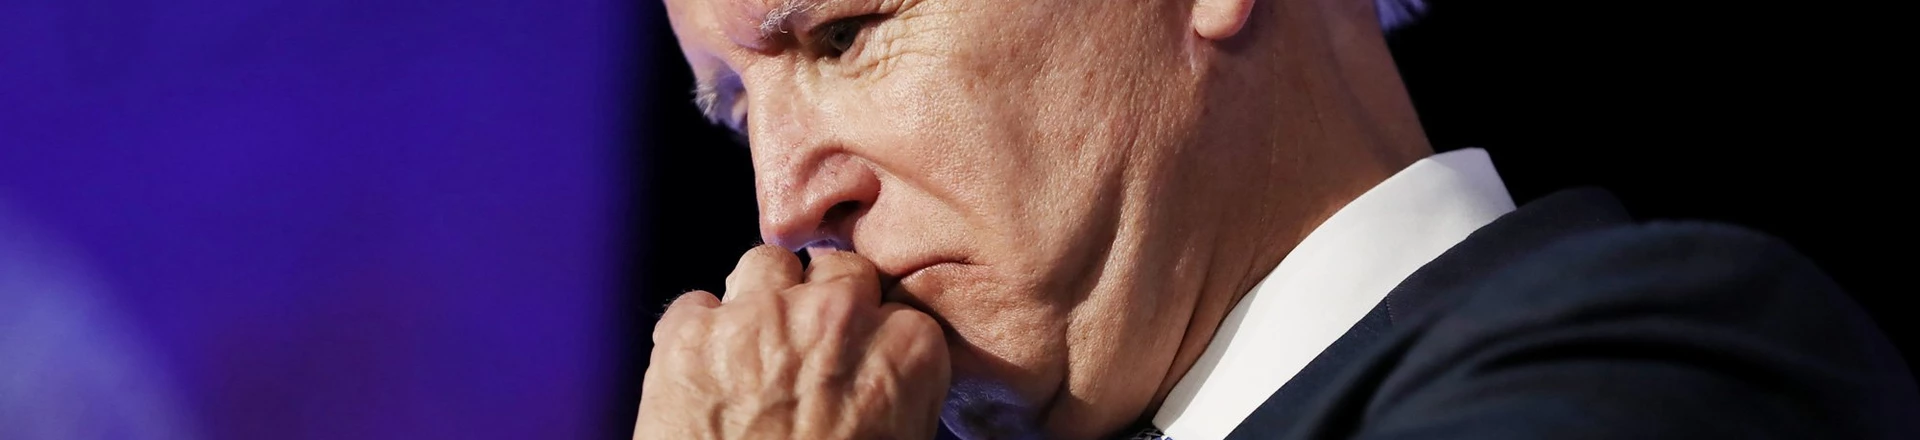 Biden em Convenção do Partido Democrata (Photo by Mario Tama/Getty Images)